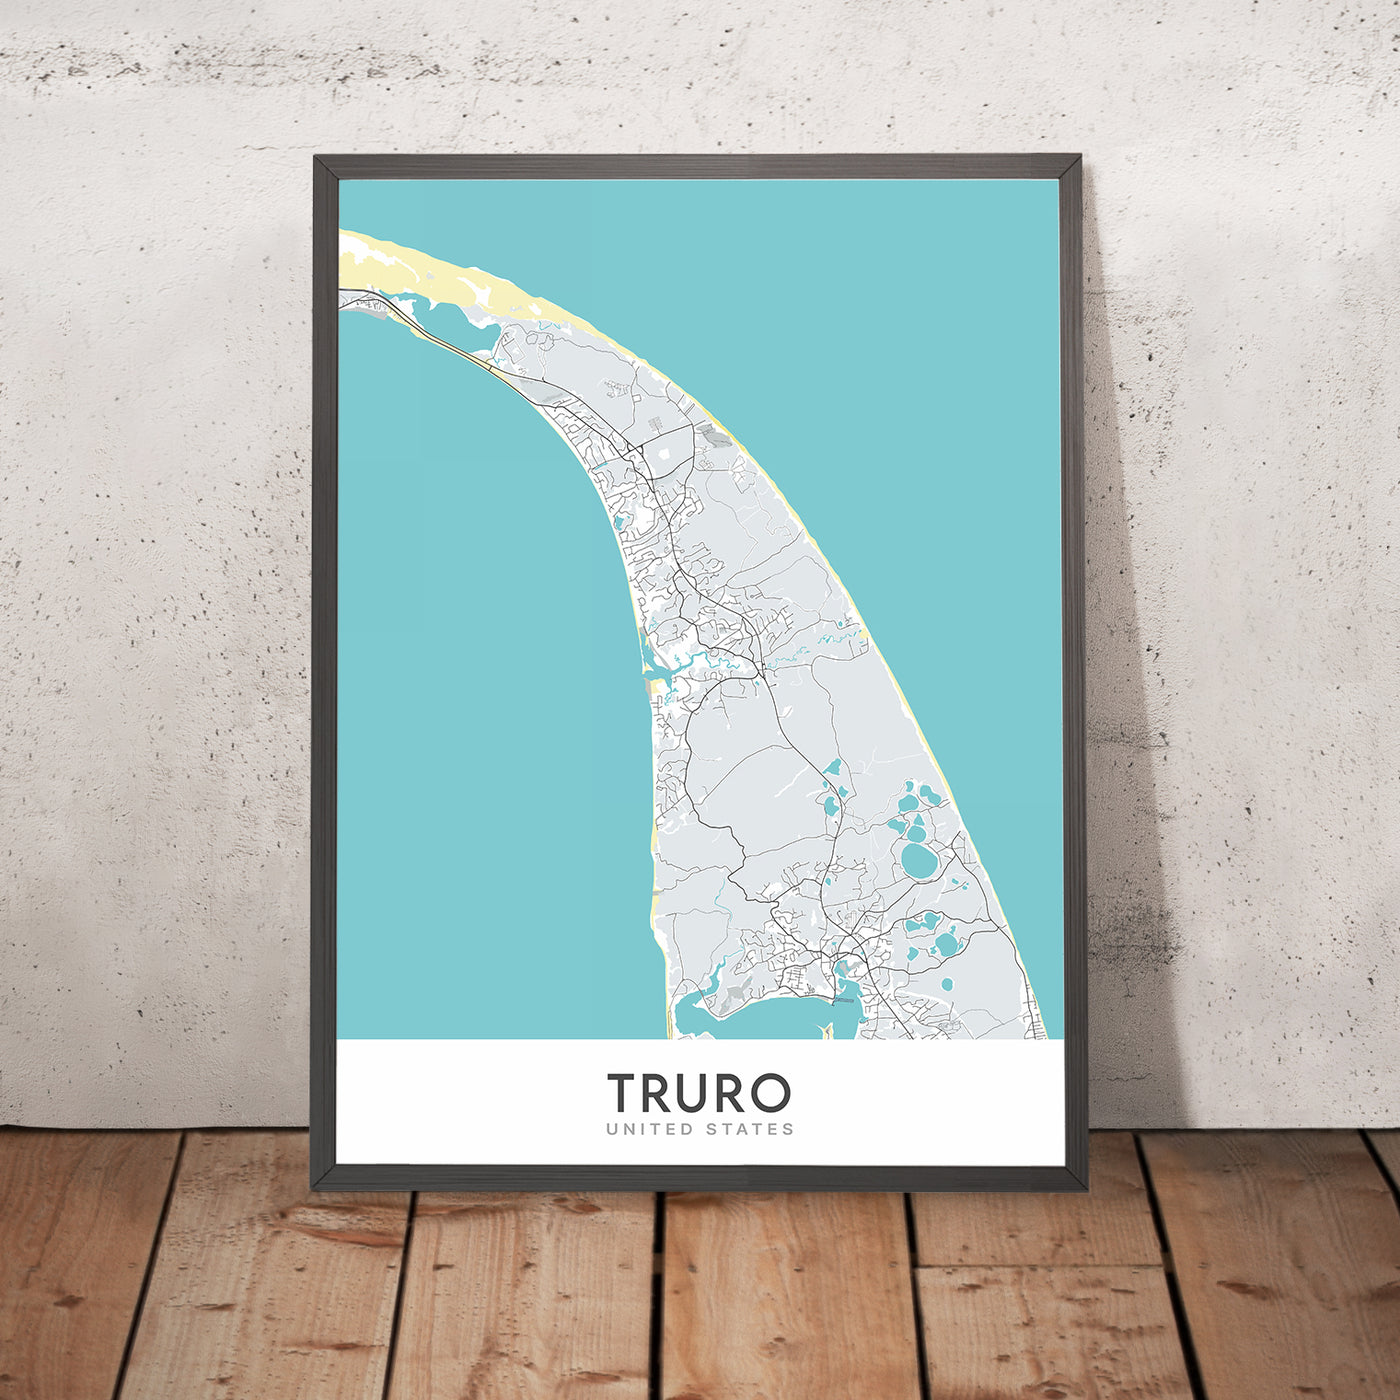 Moderner Stadtplan von Truro, MA: Truro Center, North Truro, South Truro, East Truro, West Truro